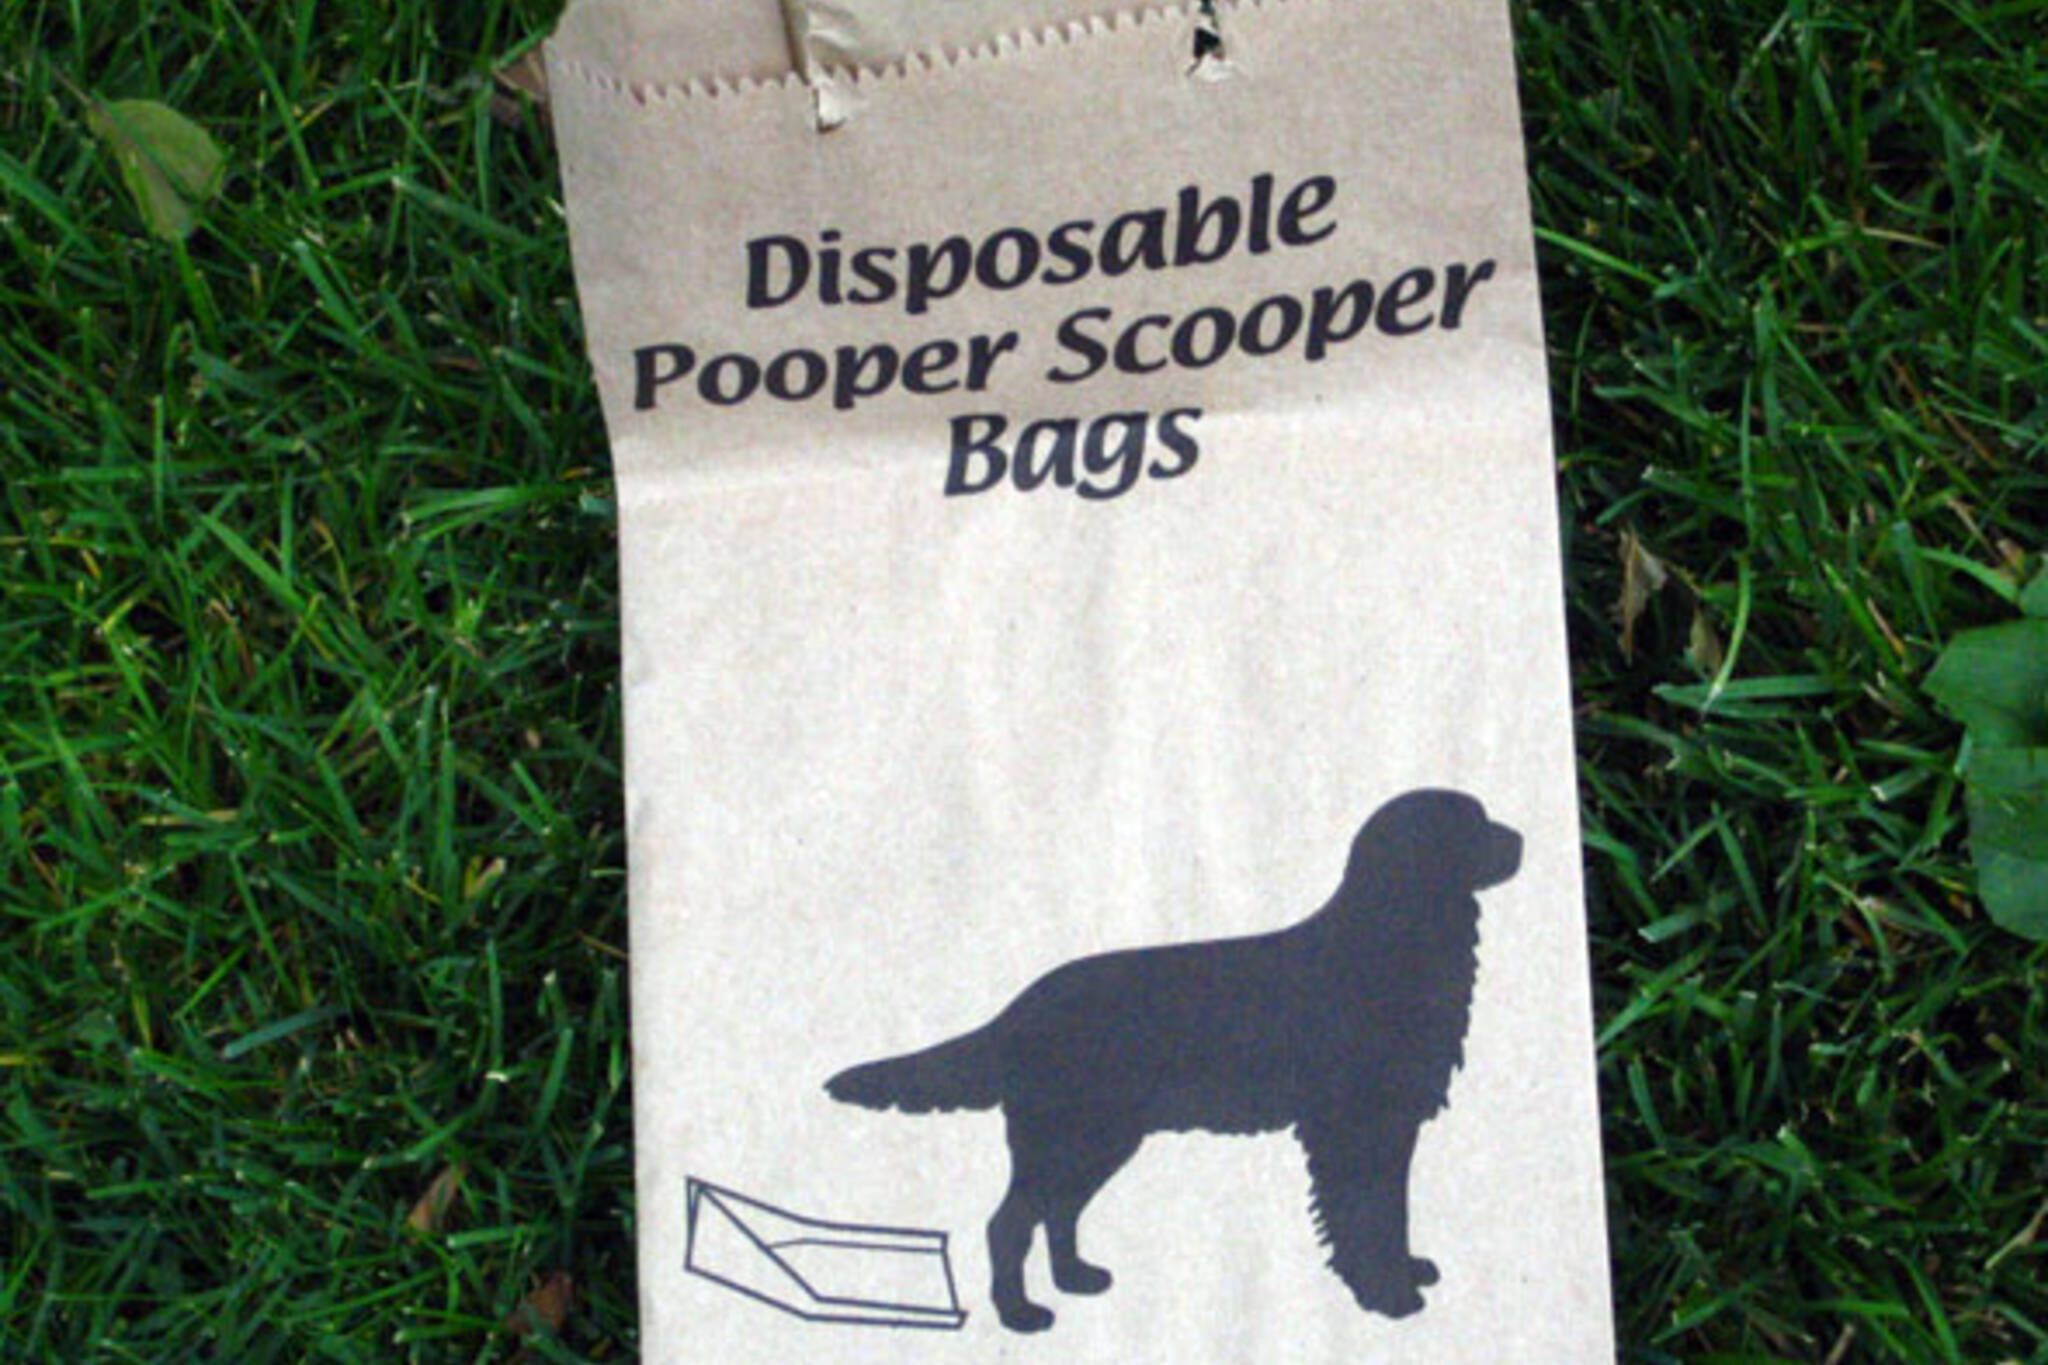 Dog poop